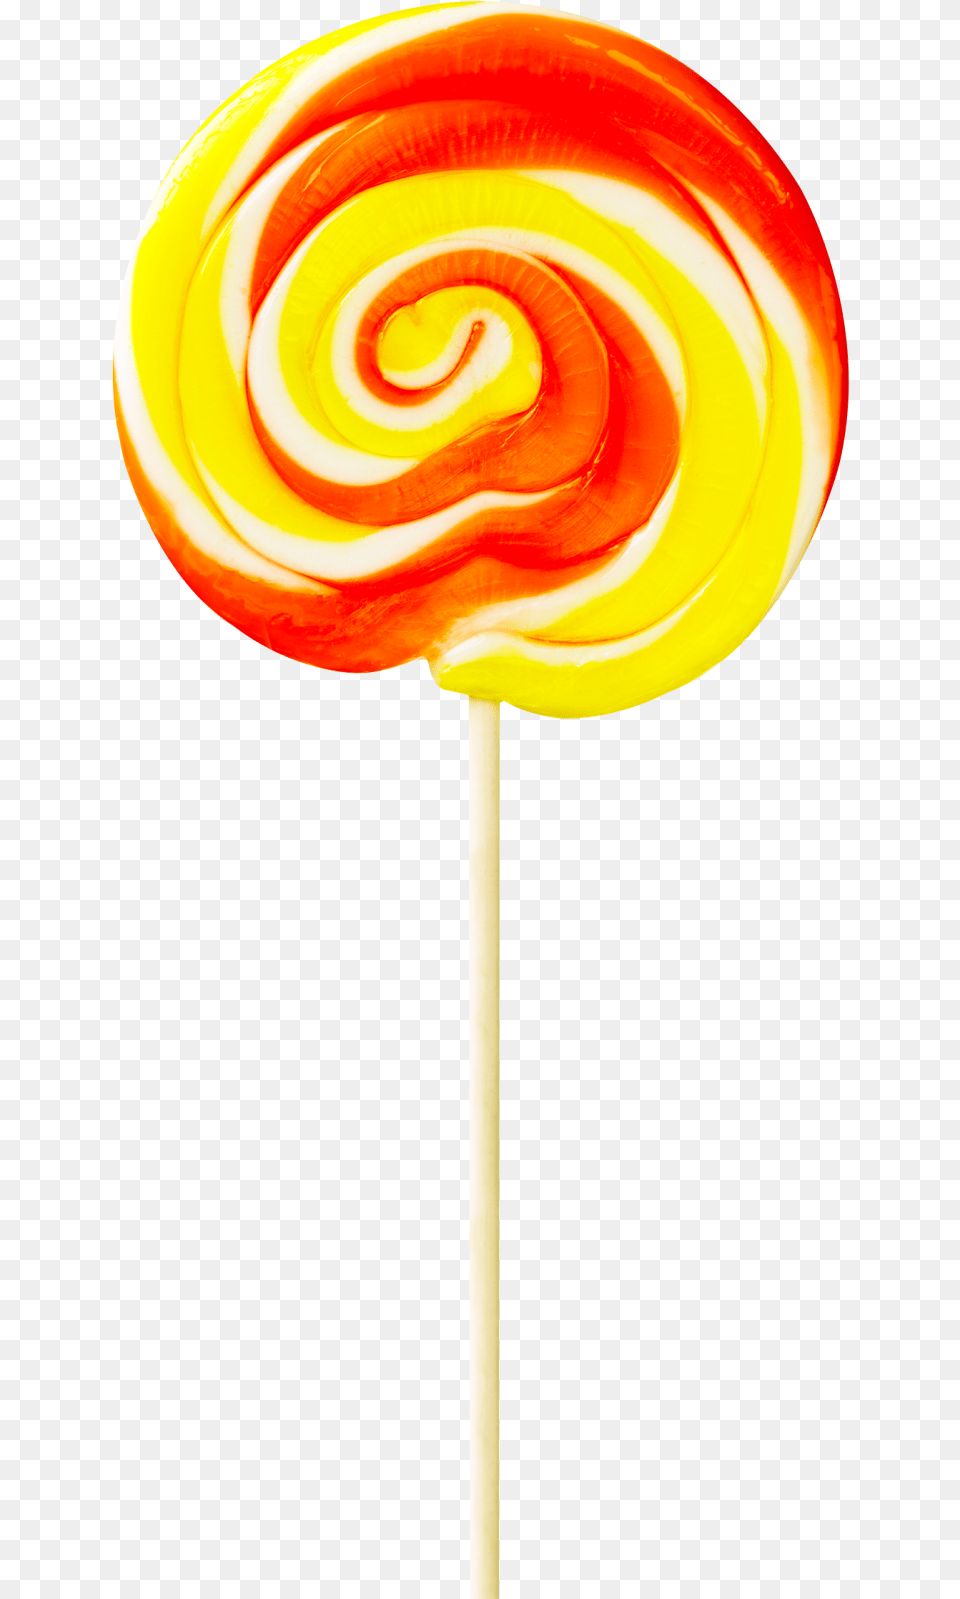 Lollipop Image Permen Lollipop, Candy, Food, Sweets, Lamp Png